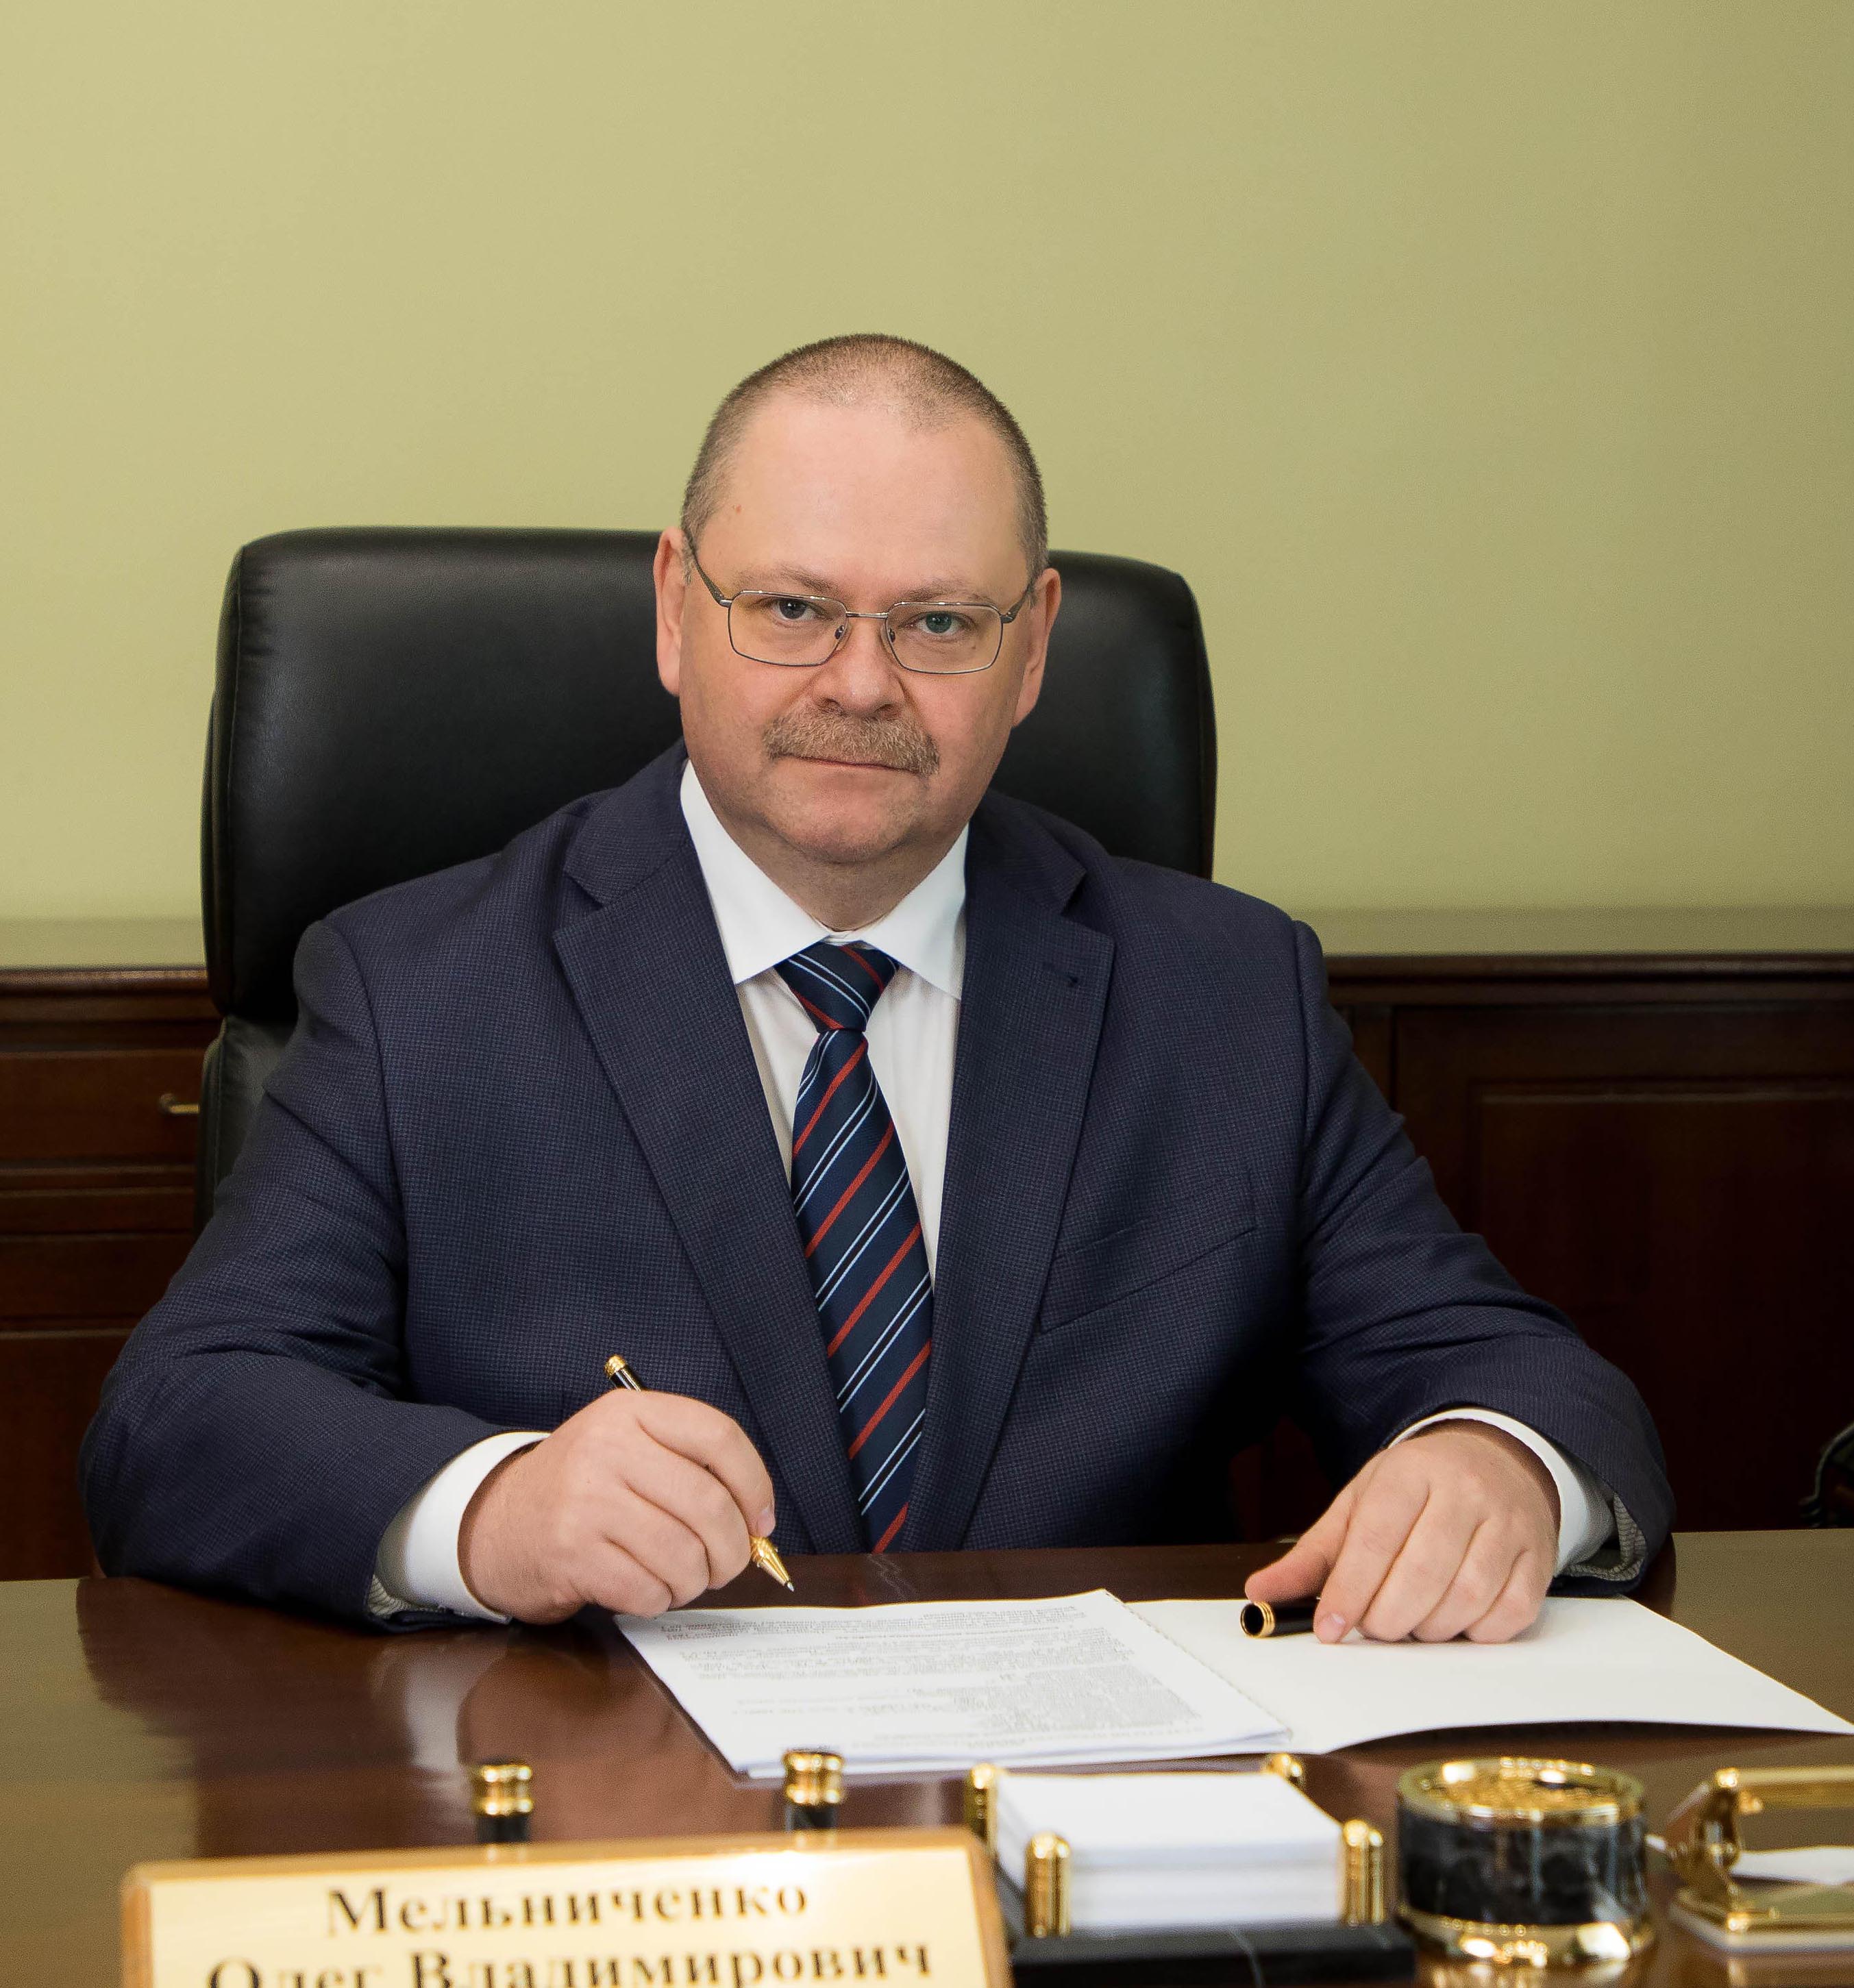 21 мая губернатор Пензенской области Олег Мельниченко отмечает свое 50-летие